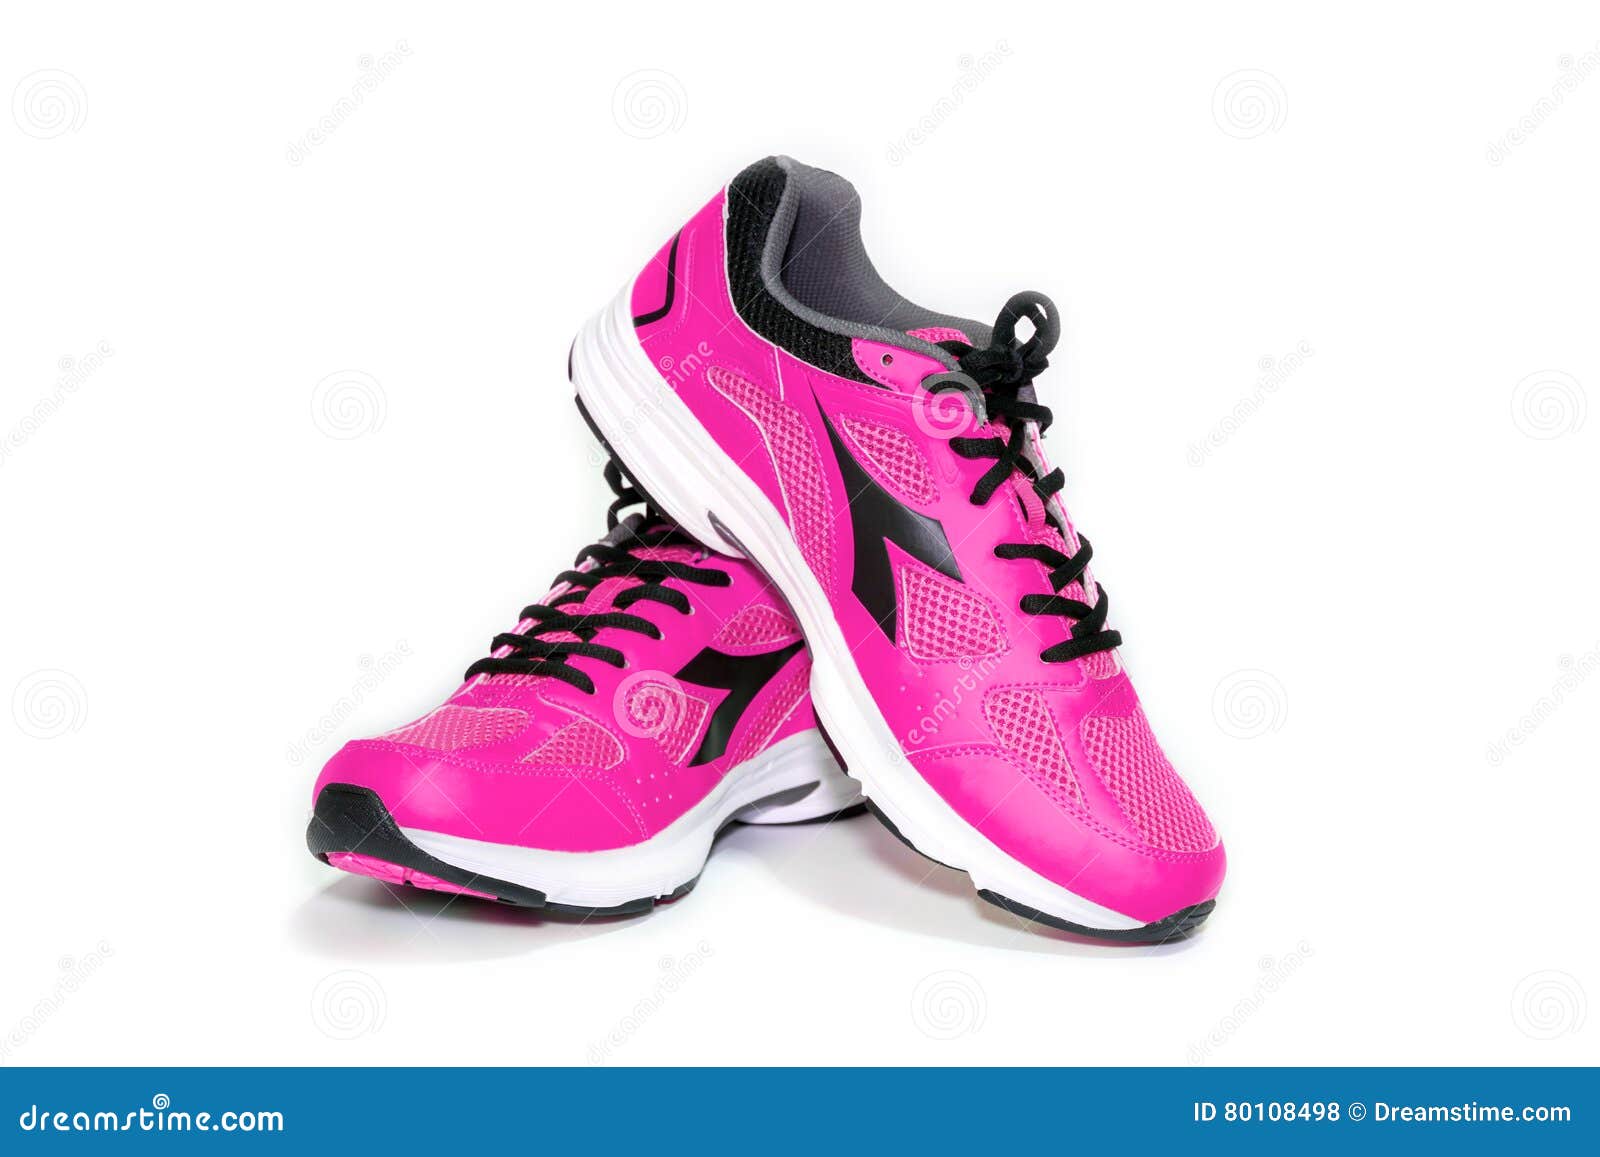 diadora pink shoes